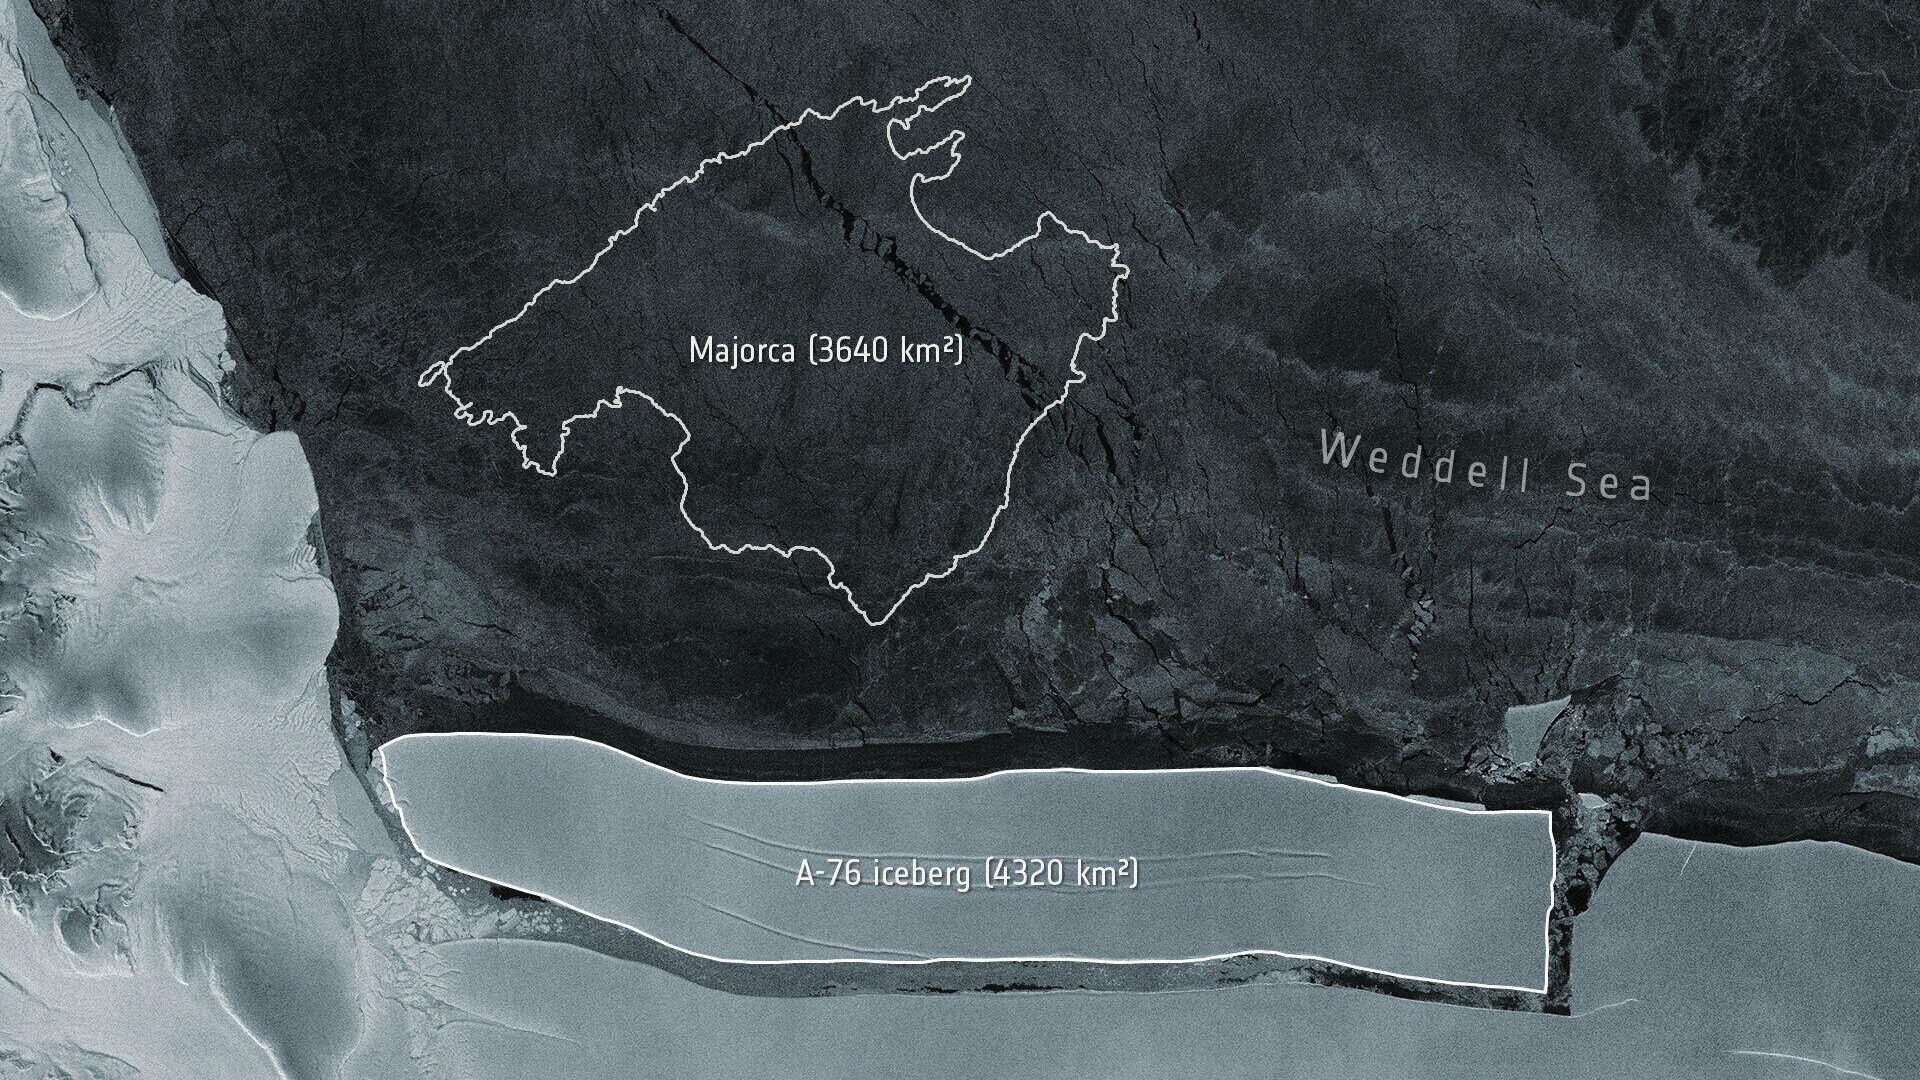 Сравнительные размеры острова Мальорка и айсберга А-76 - РИА Новости, 1920, 20.05.2021